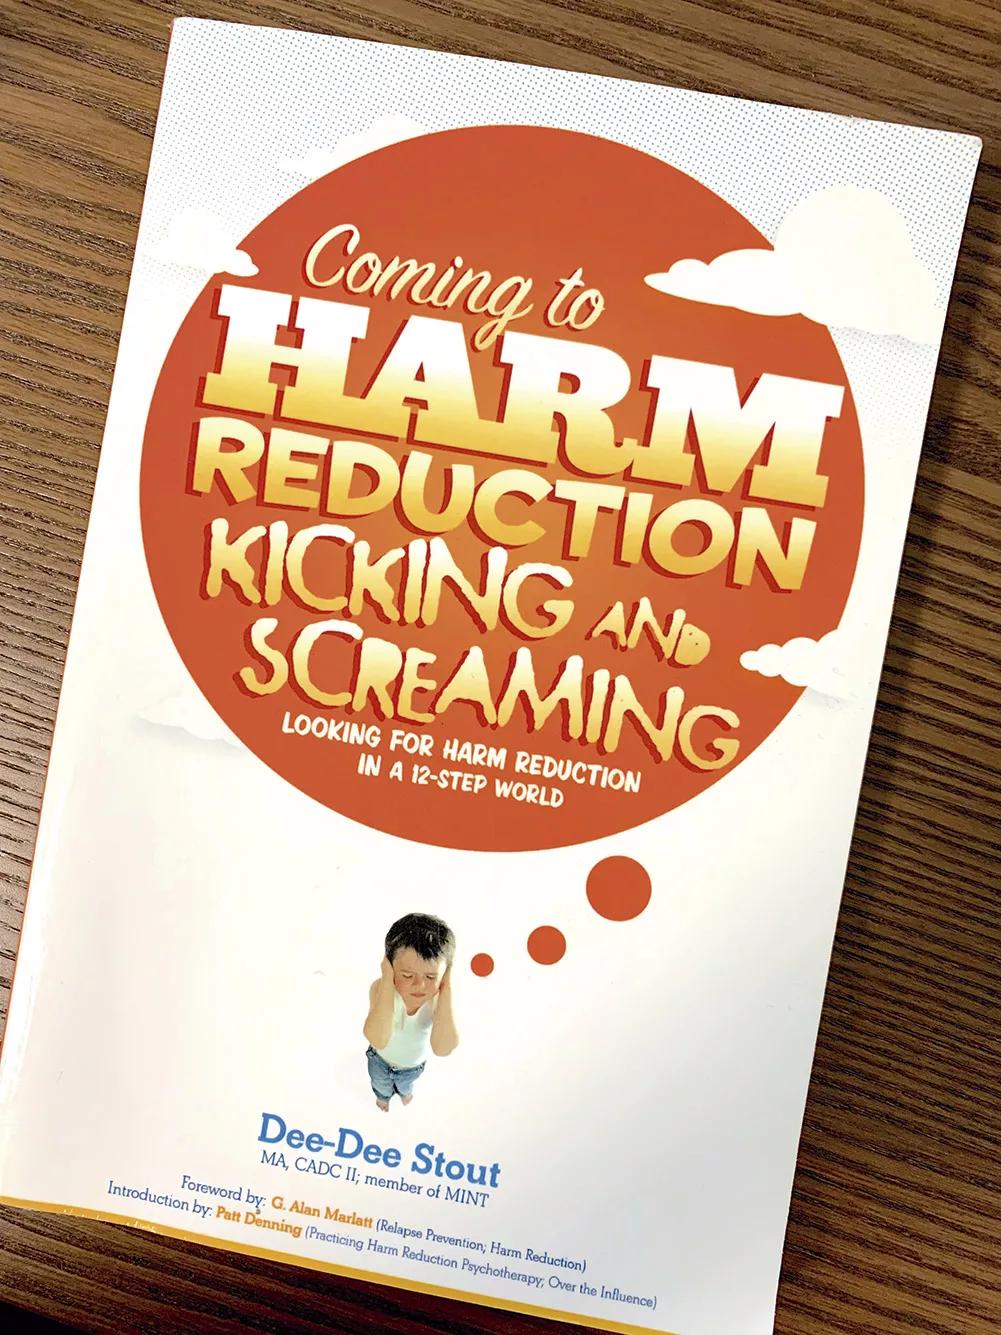 Goro Koto recomienda este libro: Llegando a la reducción de daños pateando y gritando: buscando la reducción de daños en doce pasos, de Dee-Dee Stout.